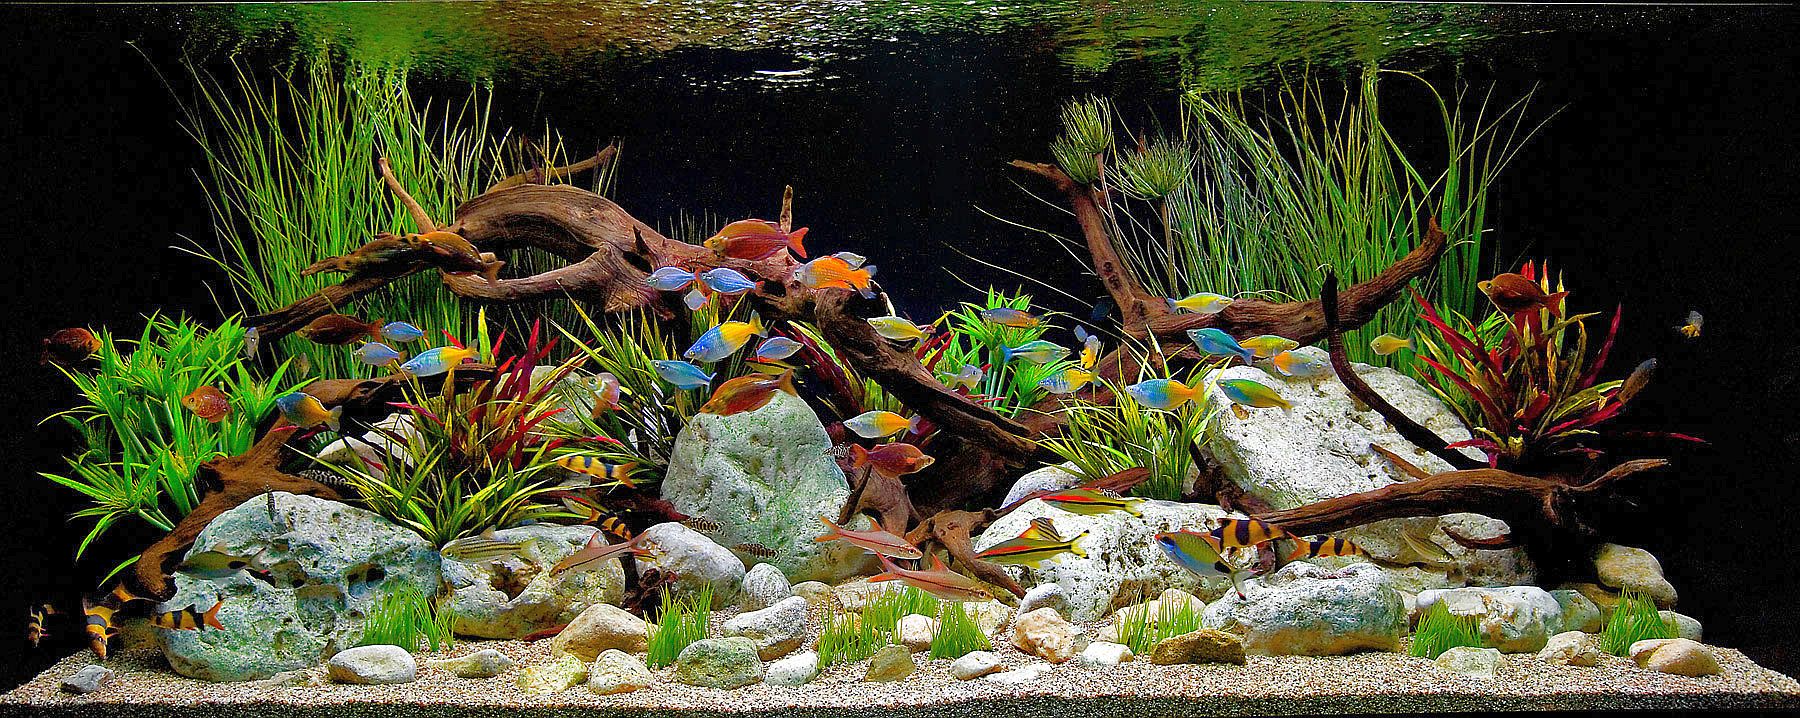 Colorful Freshwater Aquarium